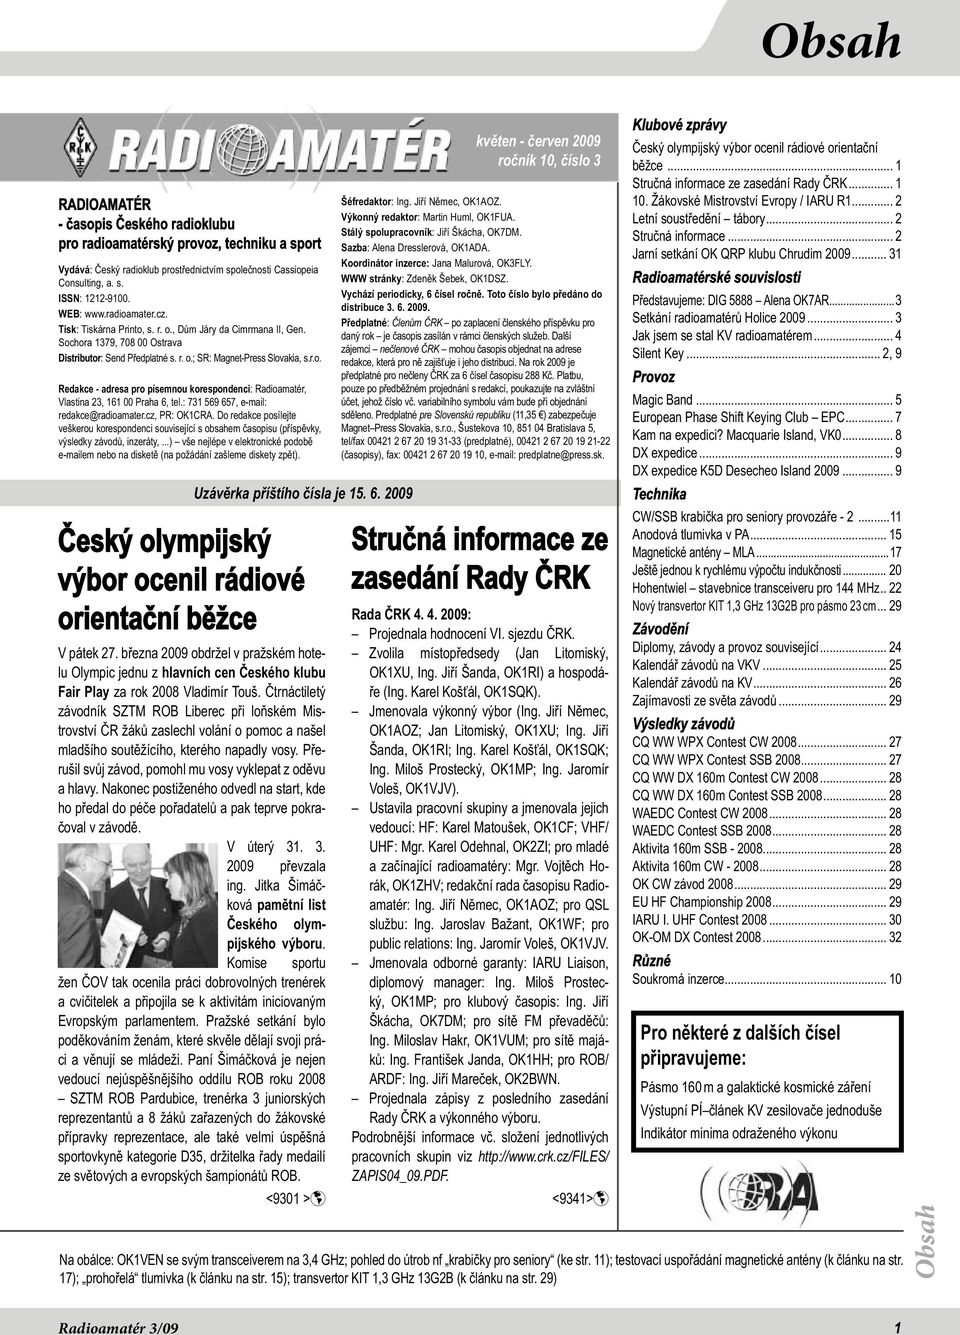 : 731 569 657, e-mail: redakce@radioamater.cz, PR: OK1CRA. Do redakce posílejte veškerou korespondenci související s obsahem časopisu (příspěvky, výsledky závodů, inzeráty,.